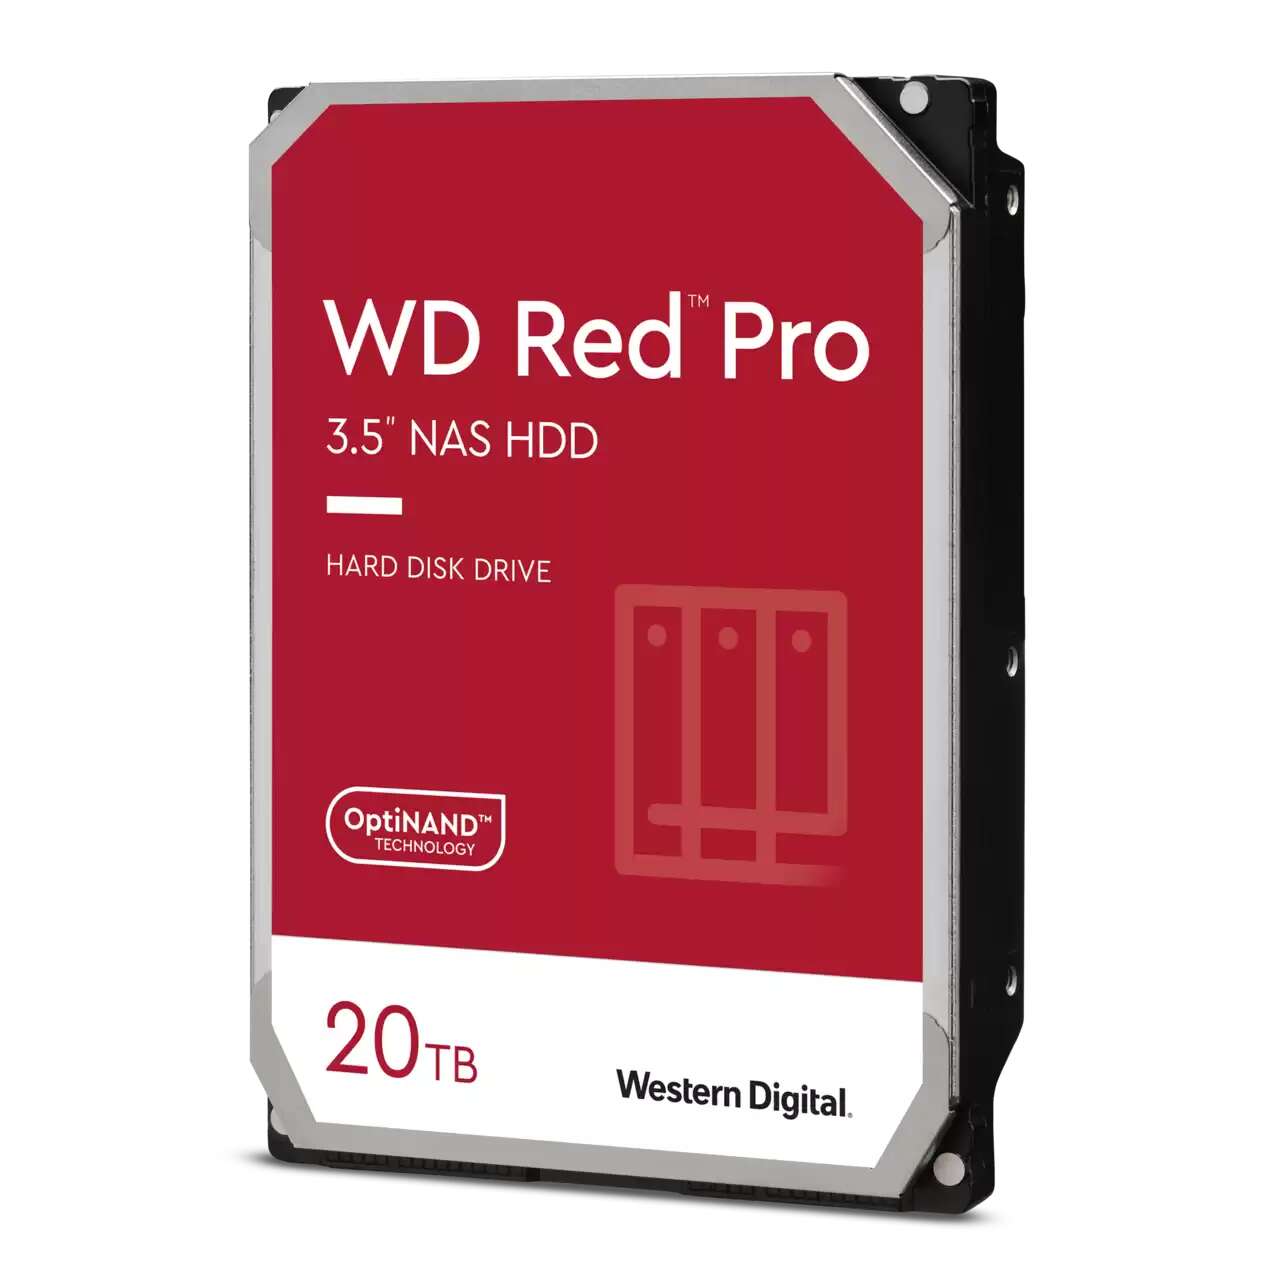 Western digital 20tb red pro sata3 3.5" nas hdd